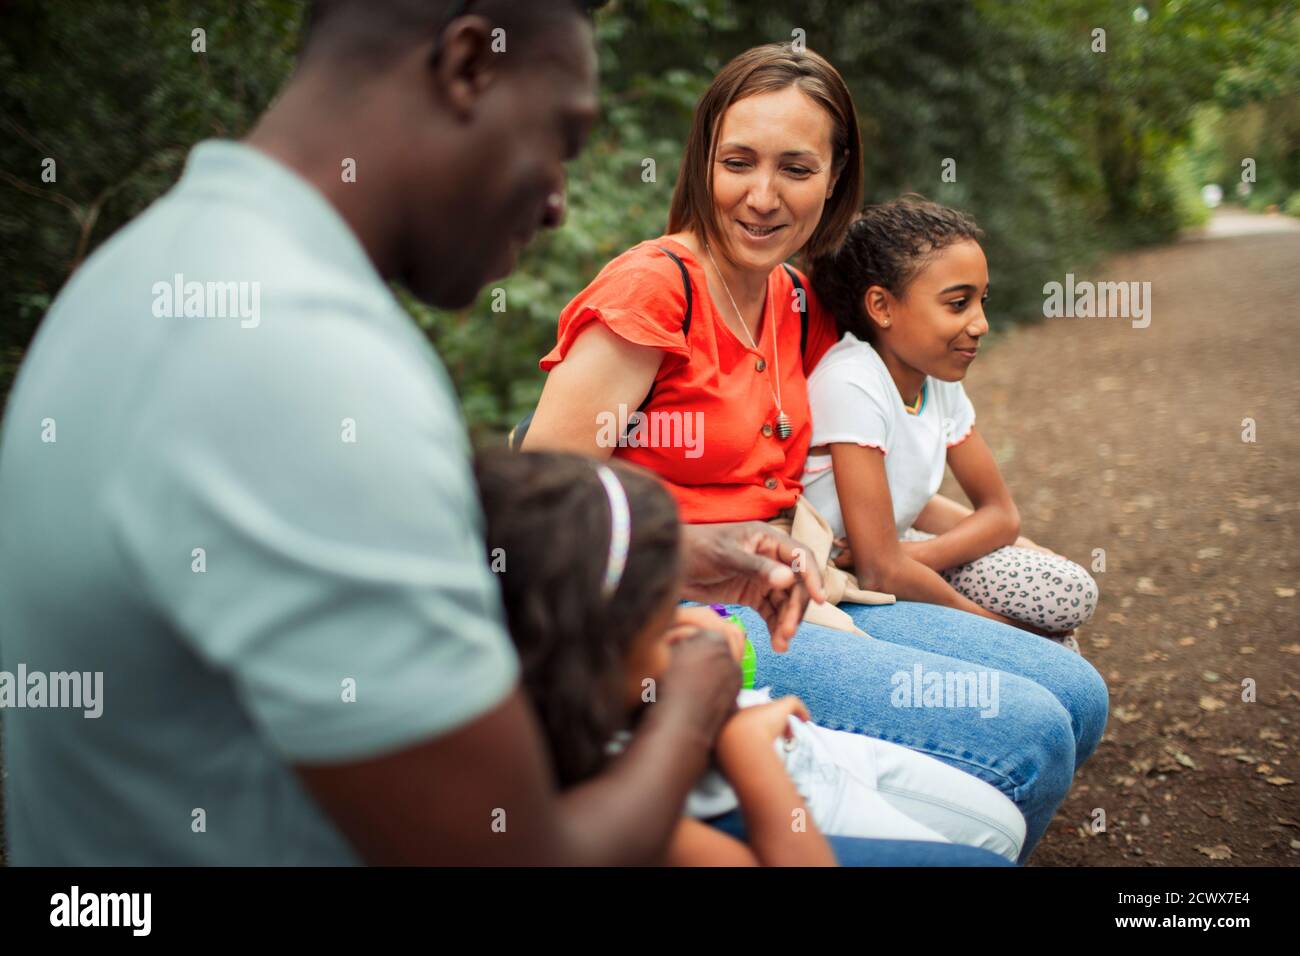 Glückliche Familie, die sich auf dem Weg im Park ausruhte Stockfoto